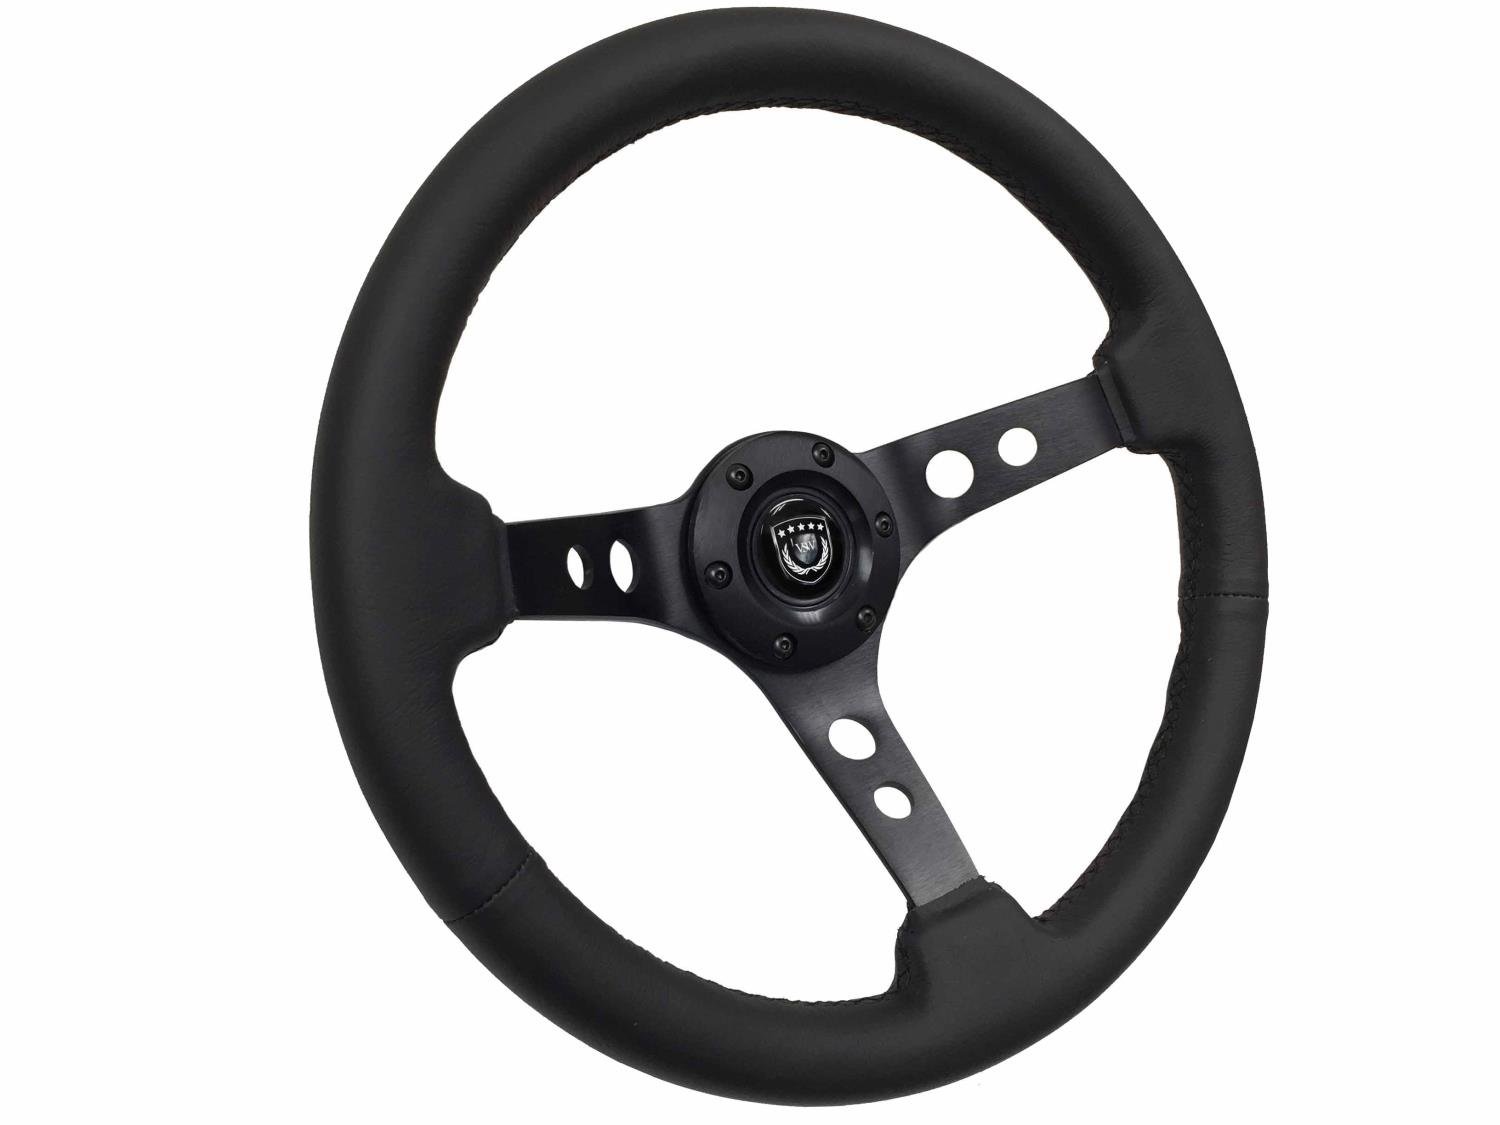 S6 Sport Steering Wheel, 14 in. Diameter, Premium Black Leather Grip